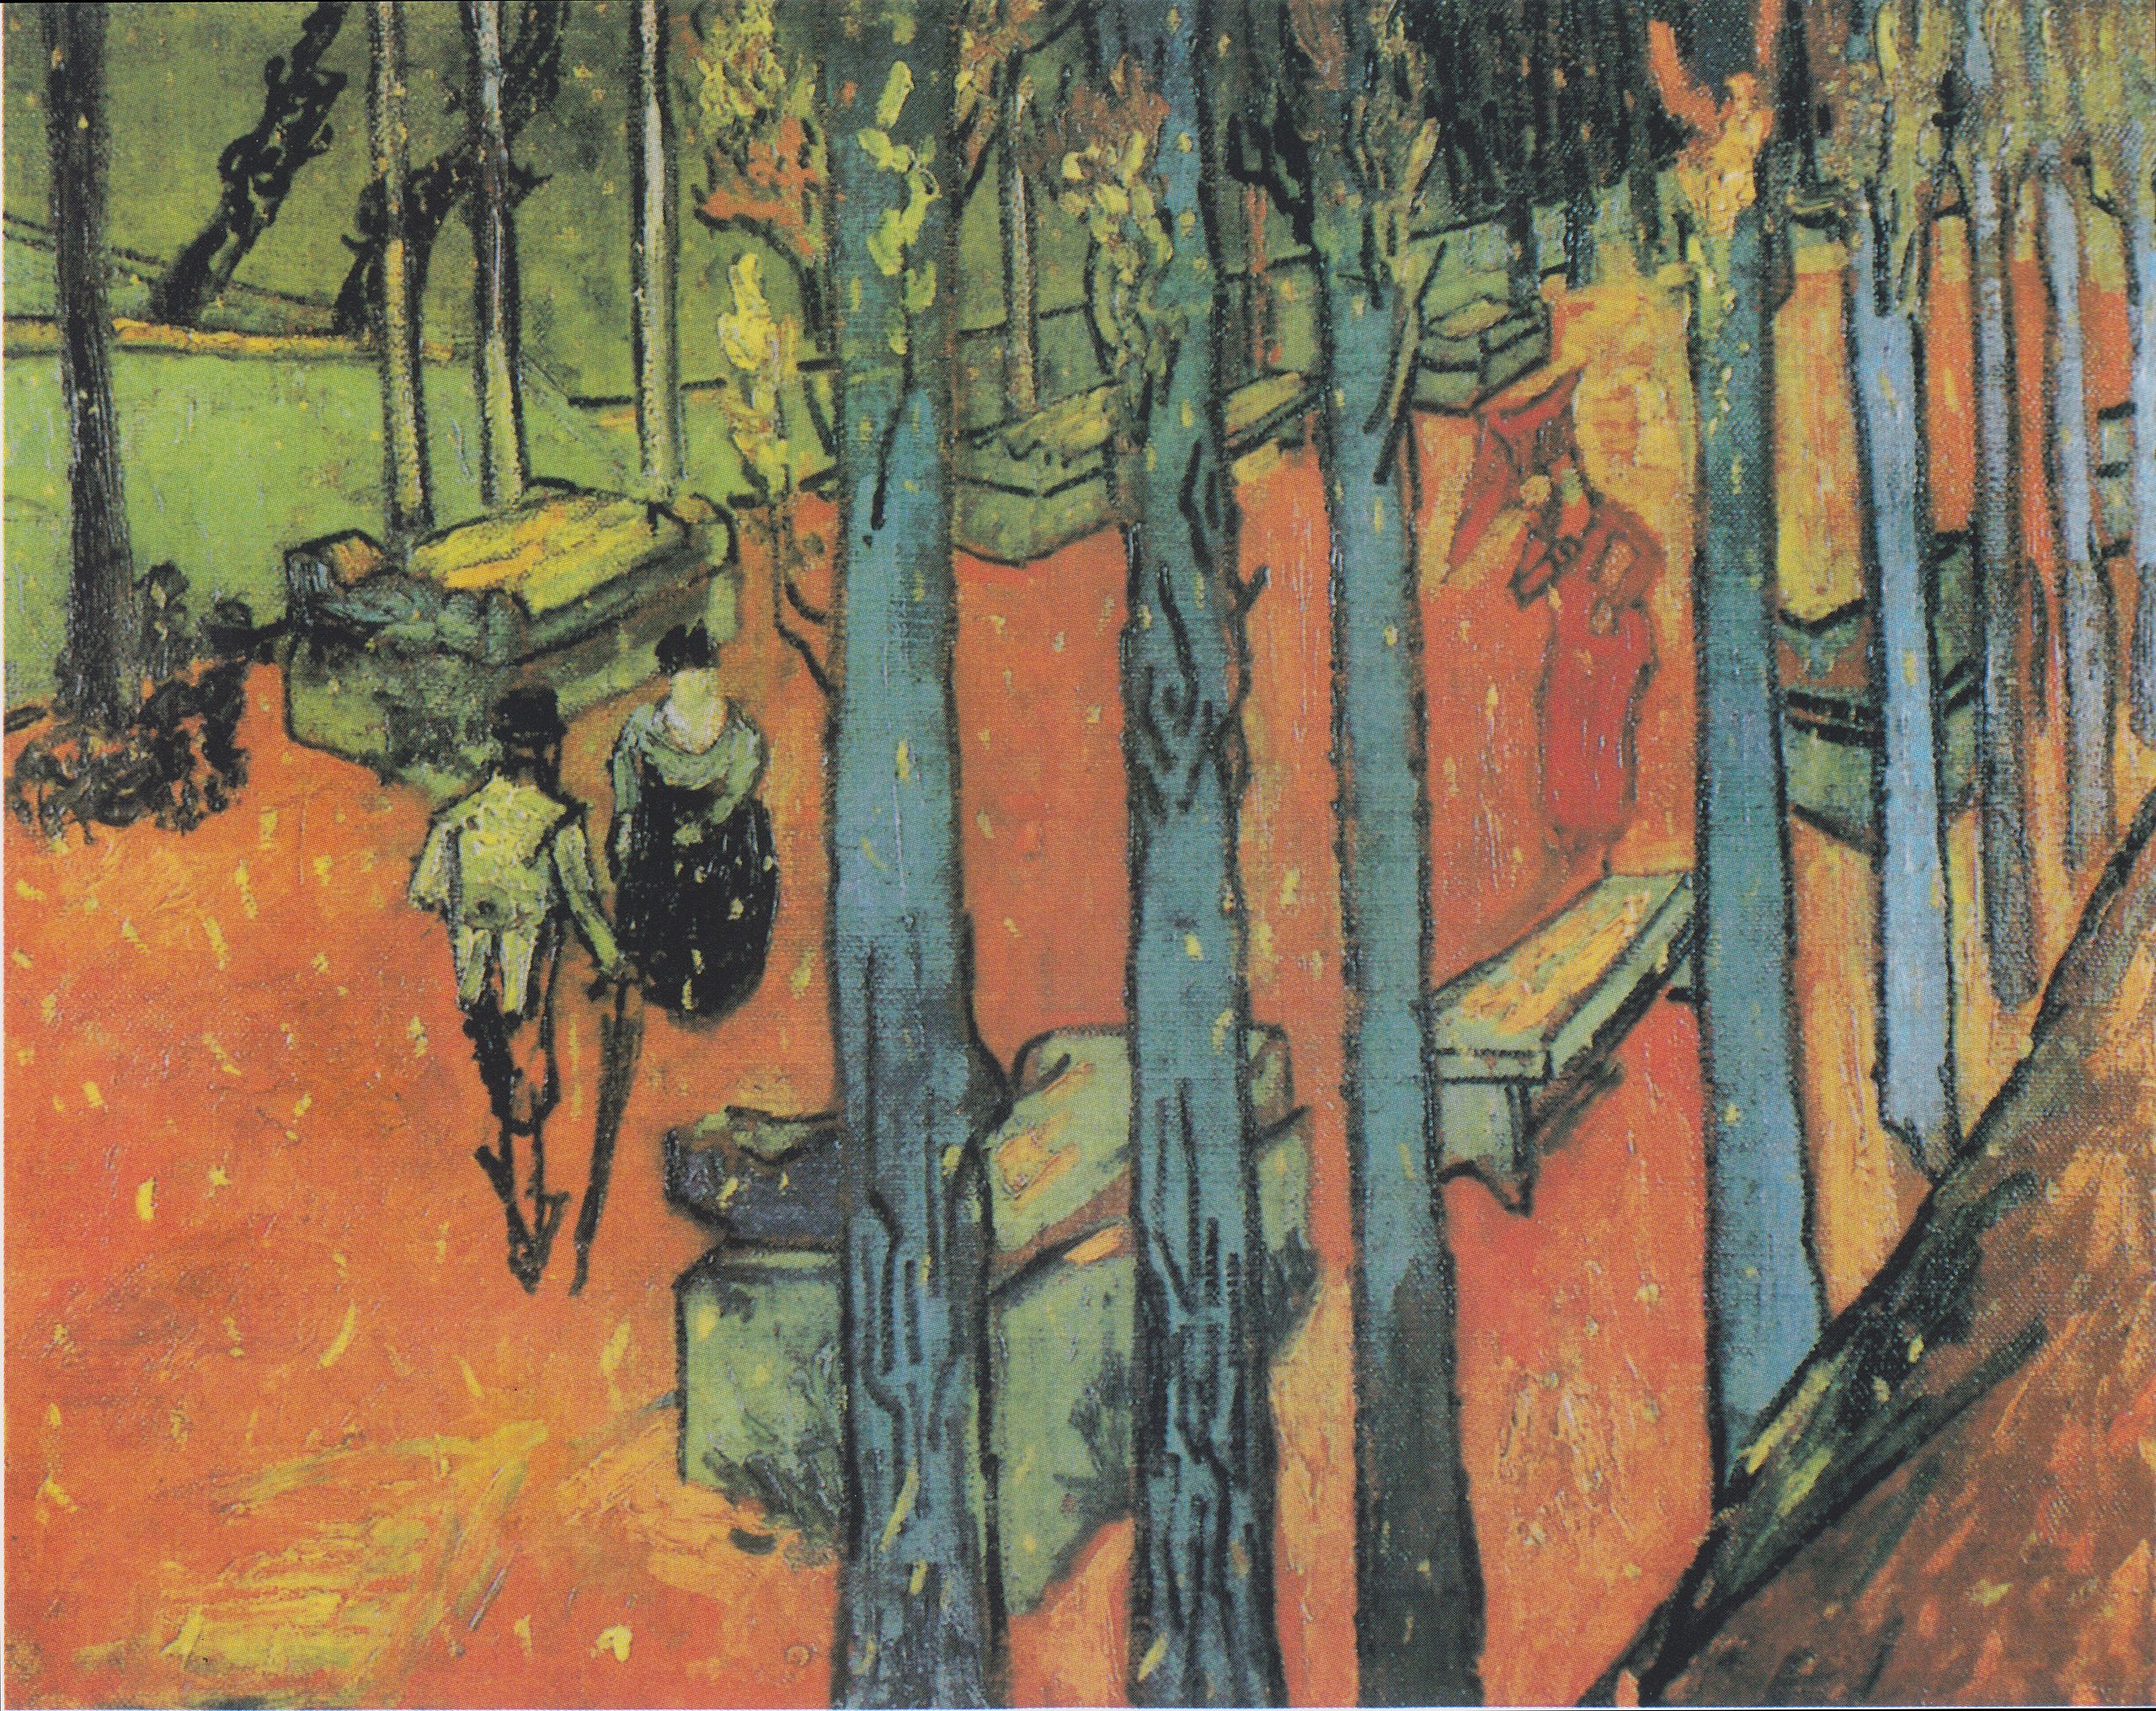 Falling Leaves (Les Alyscamps) by Vincent van Gogh - 1888 - 72.8 × 91.9 cm Kröller-Müller Museum